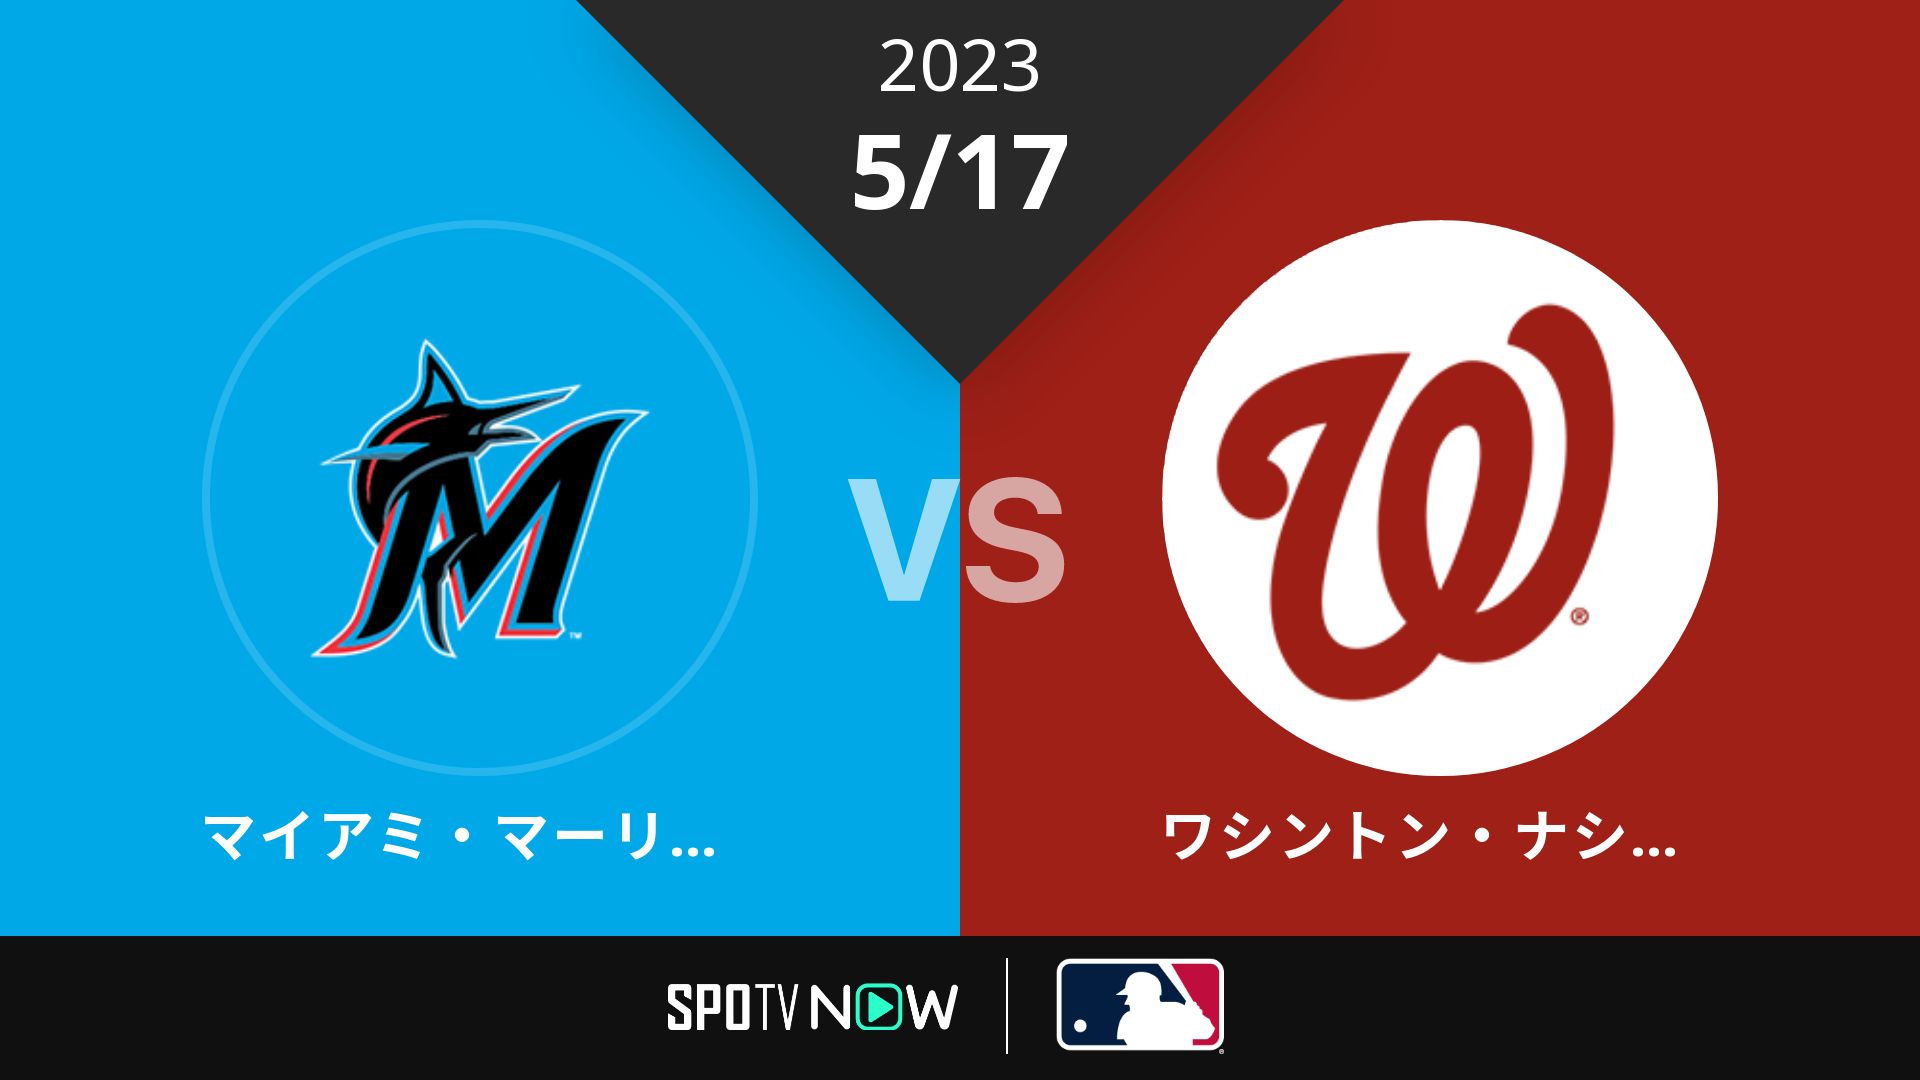 2023/5/17 マーリンズ vs ナショナルズ [MLB]